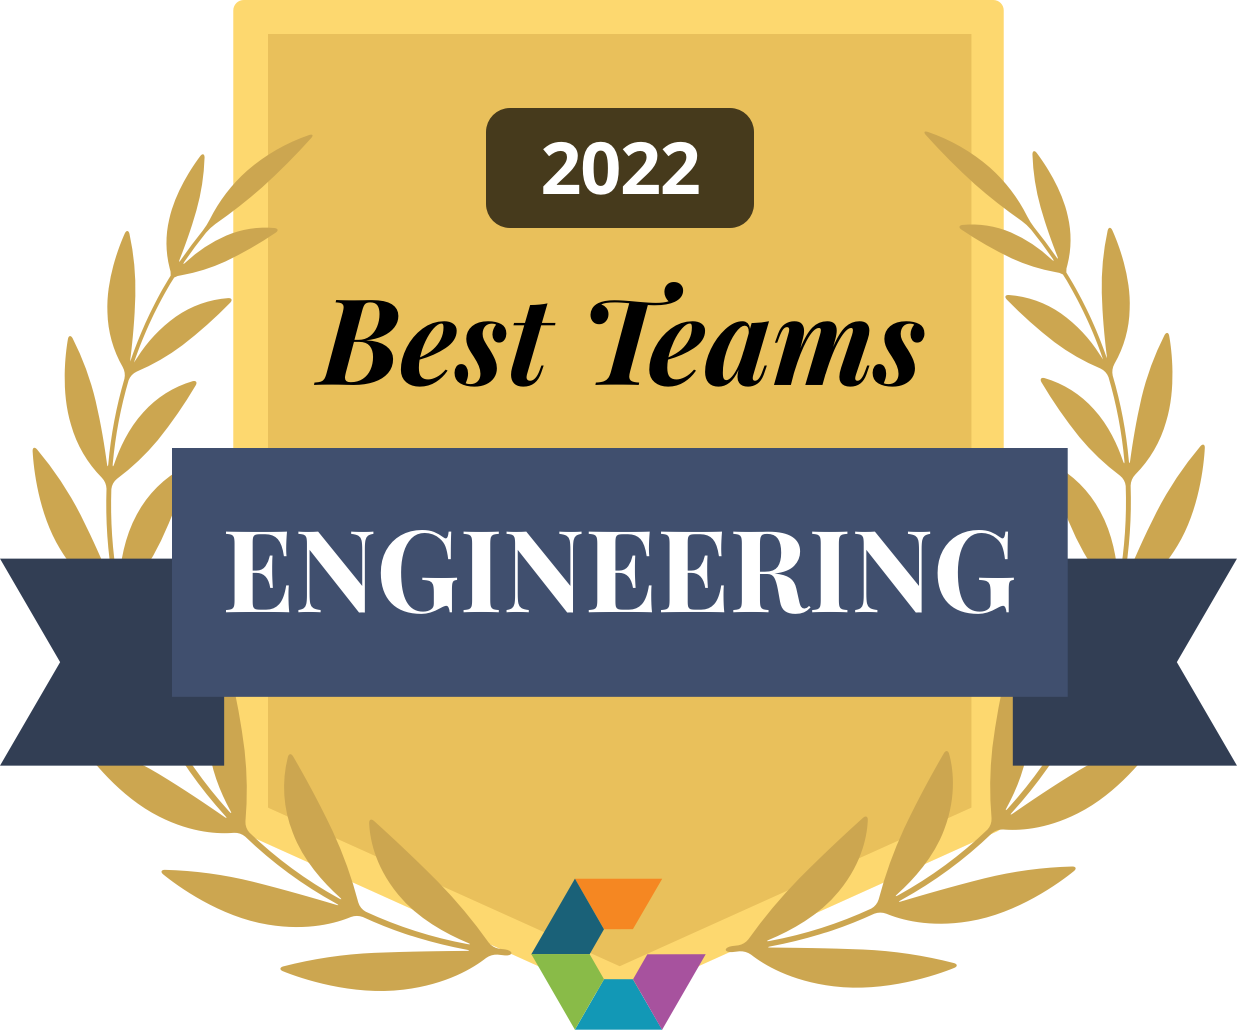 Best Engineering Teams, 2022